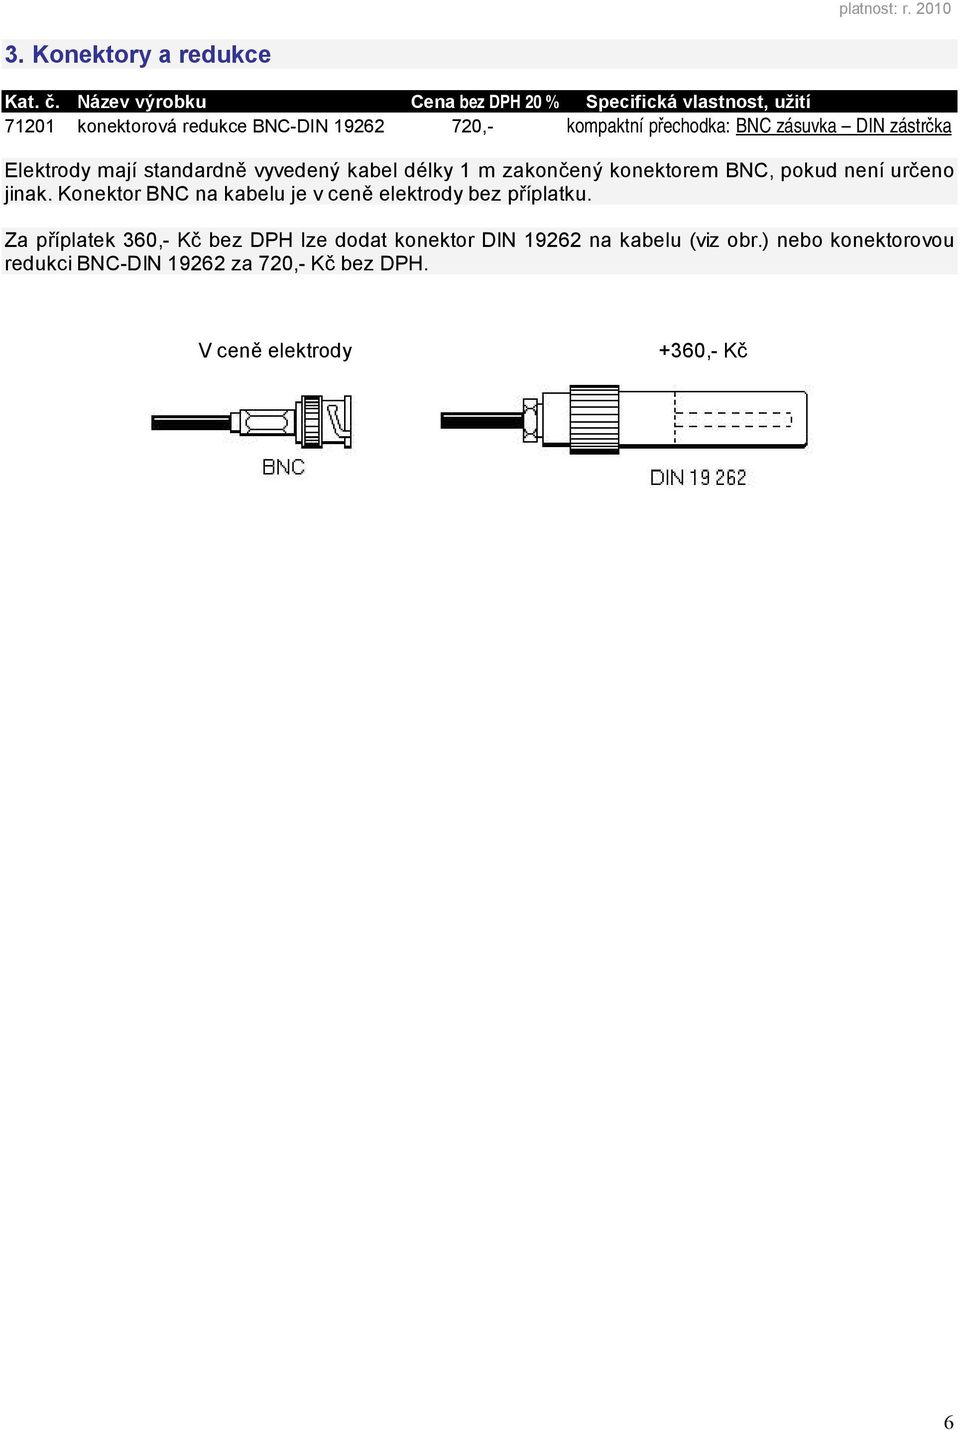 BNC zásuvka DIN zástrčka Elektrody mají standardně vyvedený kabel délky 1 m zakončený konektorem BNC, pokud není určeno jinak.